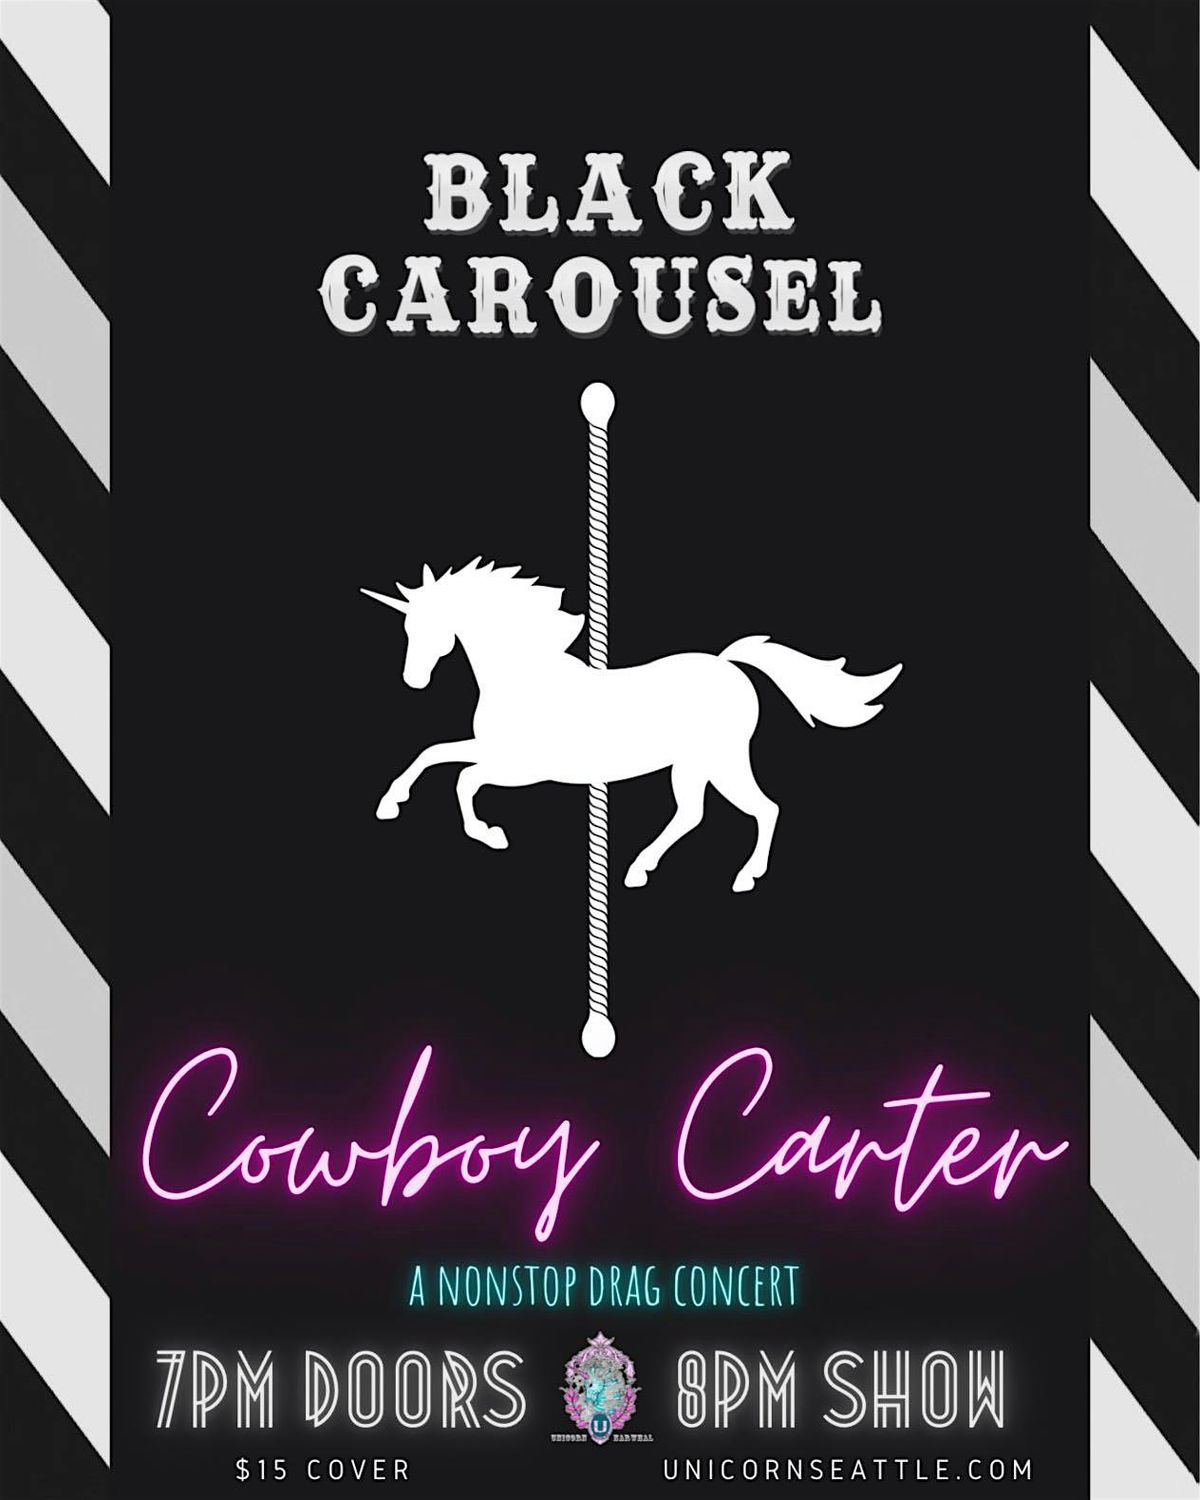 Black Carousel Present's:  Cowboy Carter a non stop drag concert